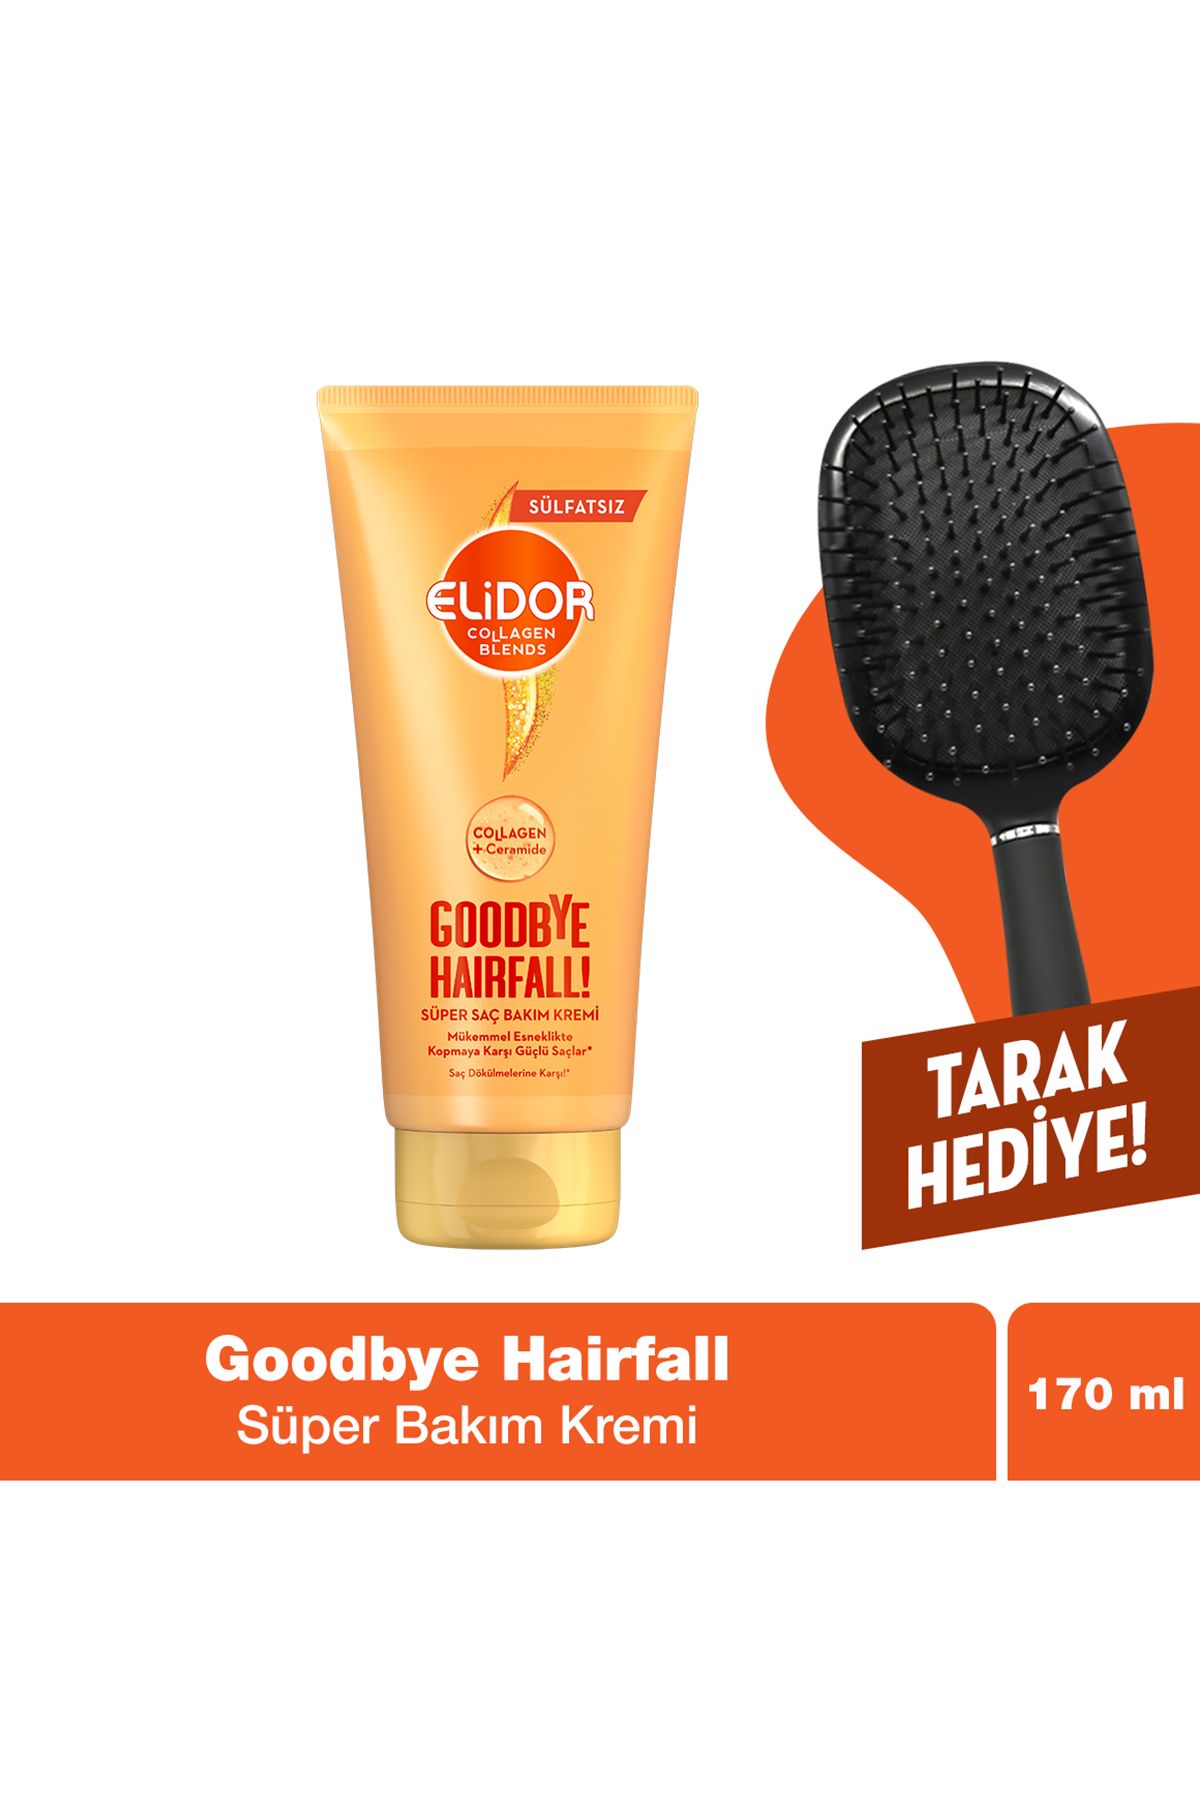 Elidor Collagen Blends Sülfatsız Süper Saç Bakım Kremi Goodbye Hairfall Saç Dökülmelerine 170 ml